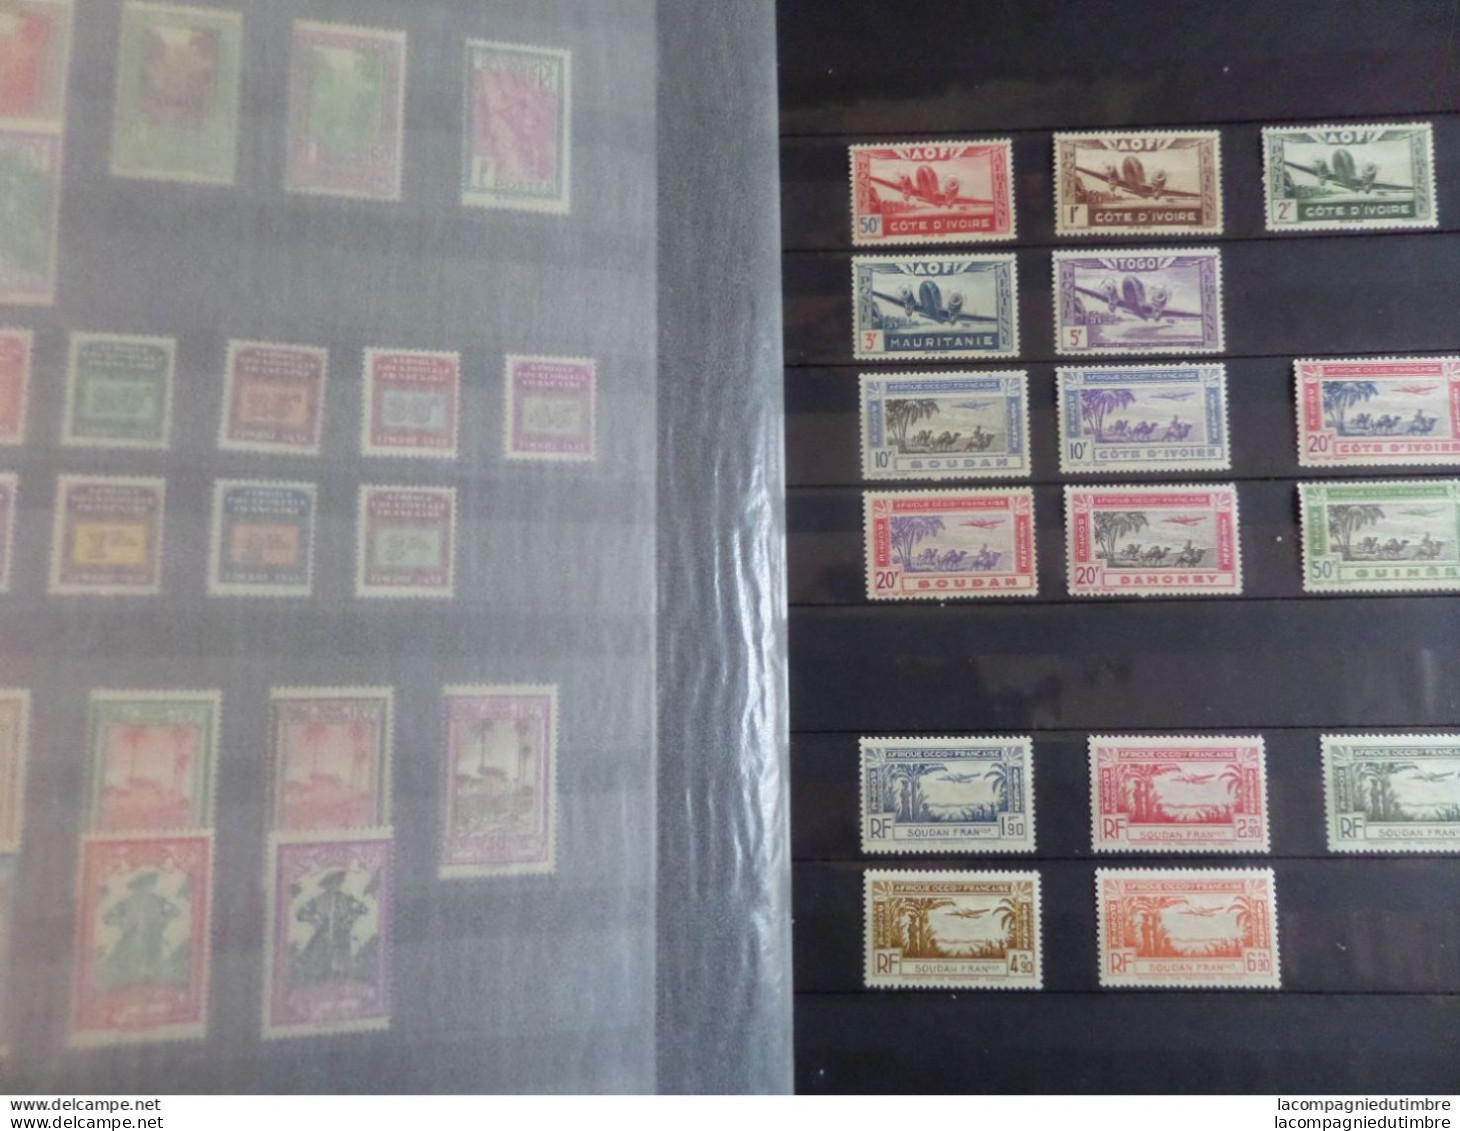 Vrac de plusieurs centaines de timbres de Colonies Françaises avant Indépendance **/*/obl. Très forte cote! TB